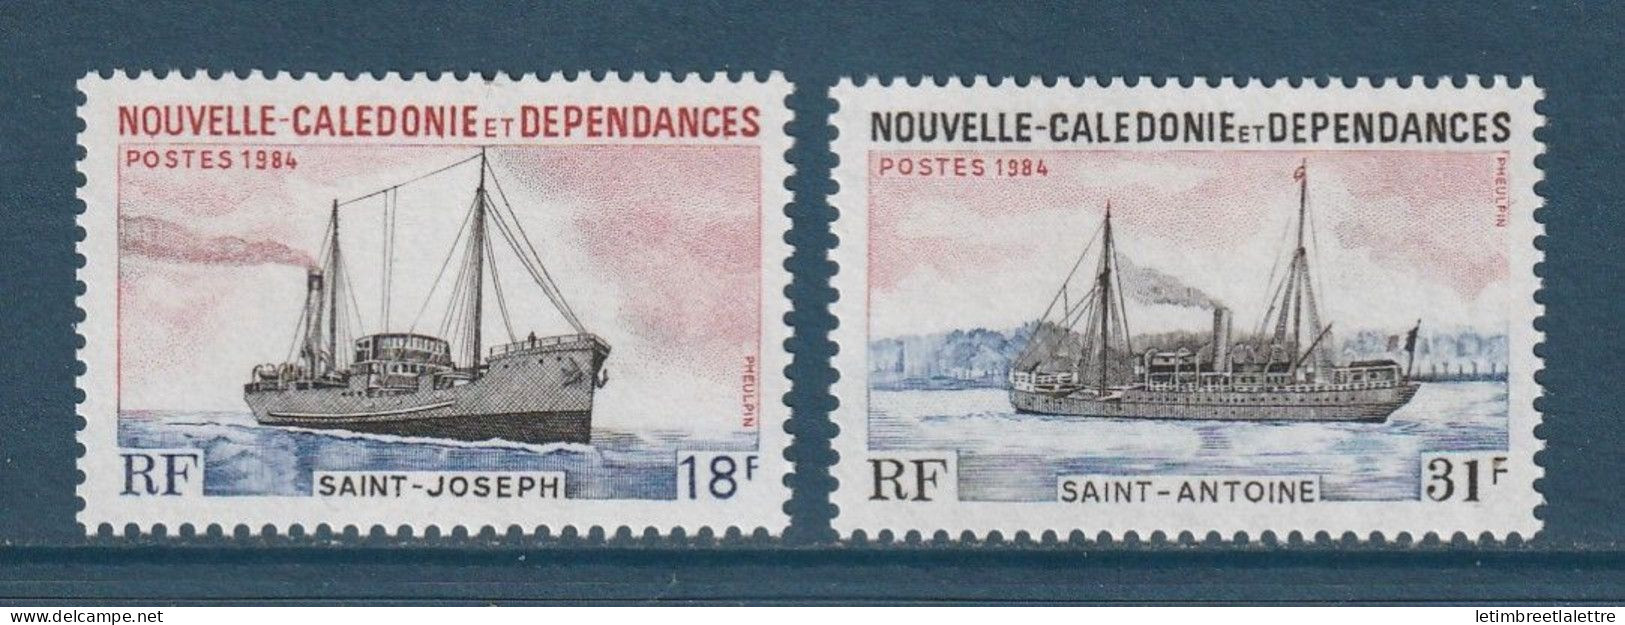 Nouvelle Calédonie - YT N° 484 Et 485 ** - Neuf Sans Charnière - 1984 - Nuovi